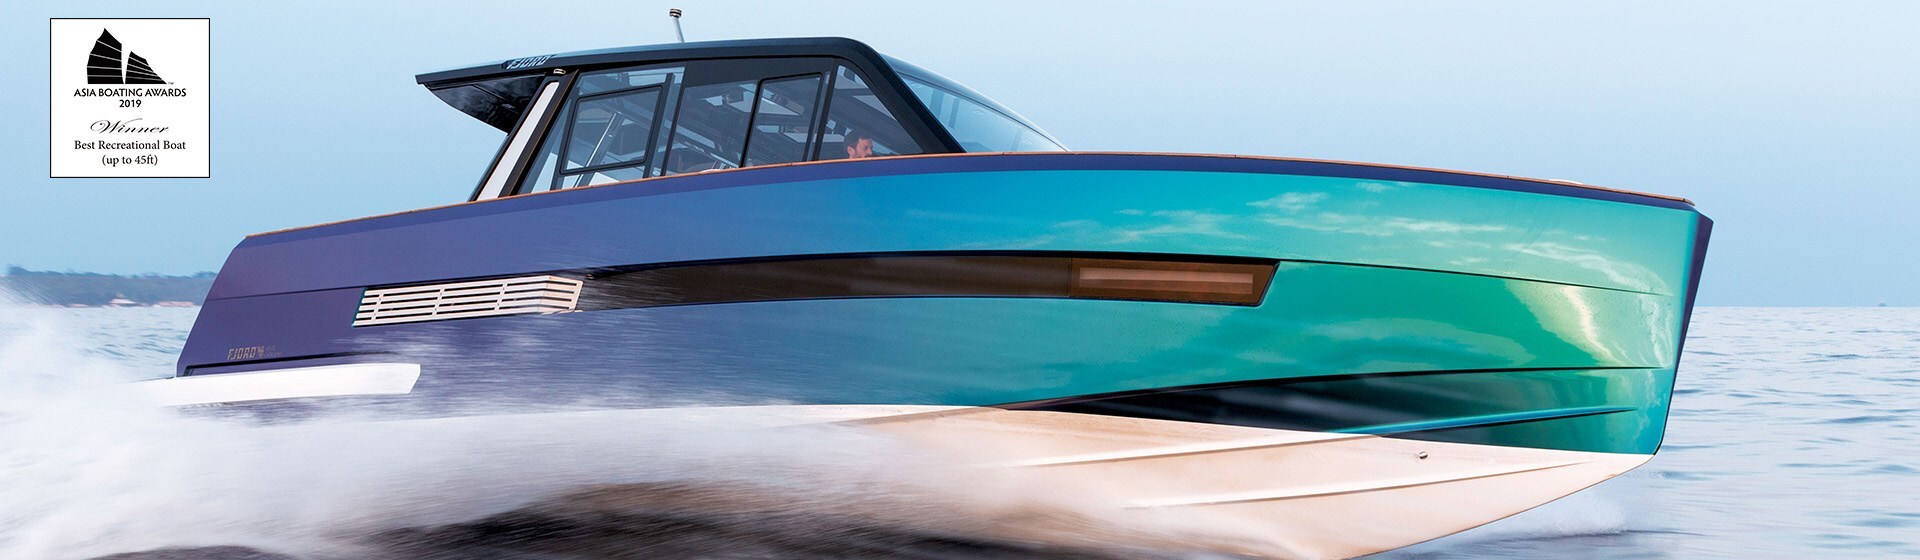 Majestuosa lancha motora de alto rendimiento de color con cabina en cubierta yendo a toda velocidad